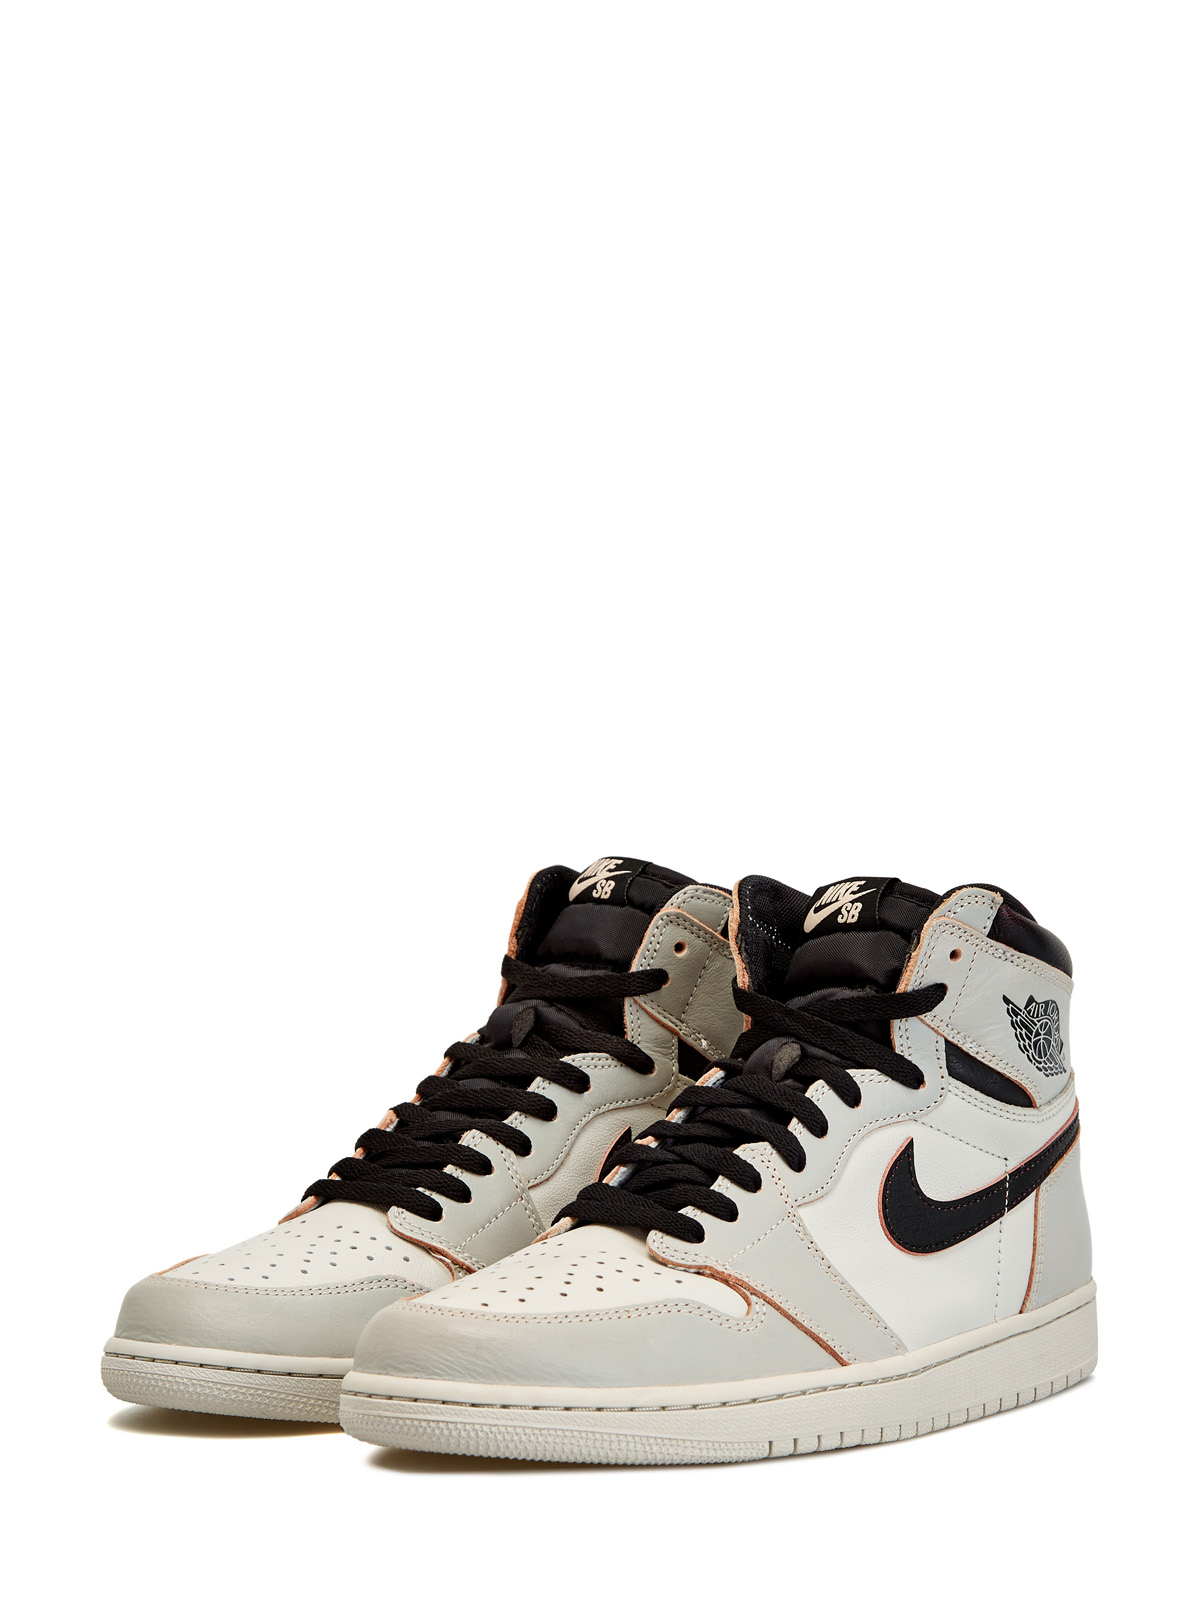 Кроссовки Nike SB x Jordan 1 High OG Defiant 'NYC to Paris' Jordan, цвет серый, размер 45 - фото 2